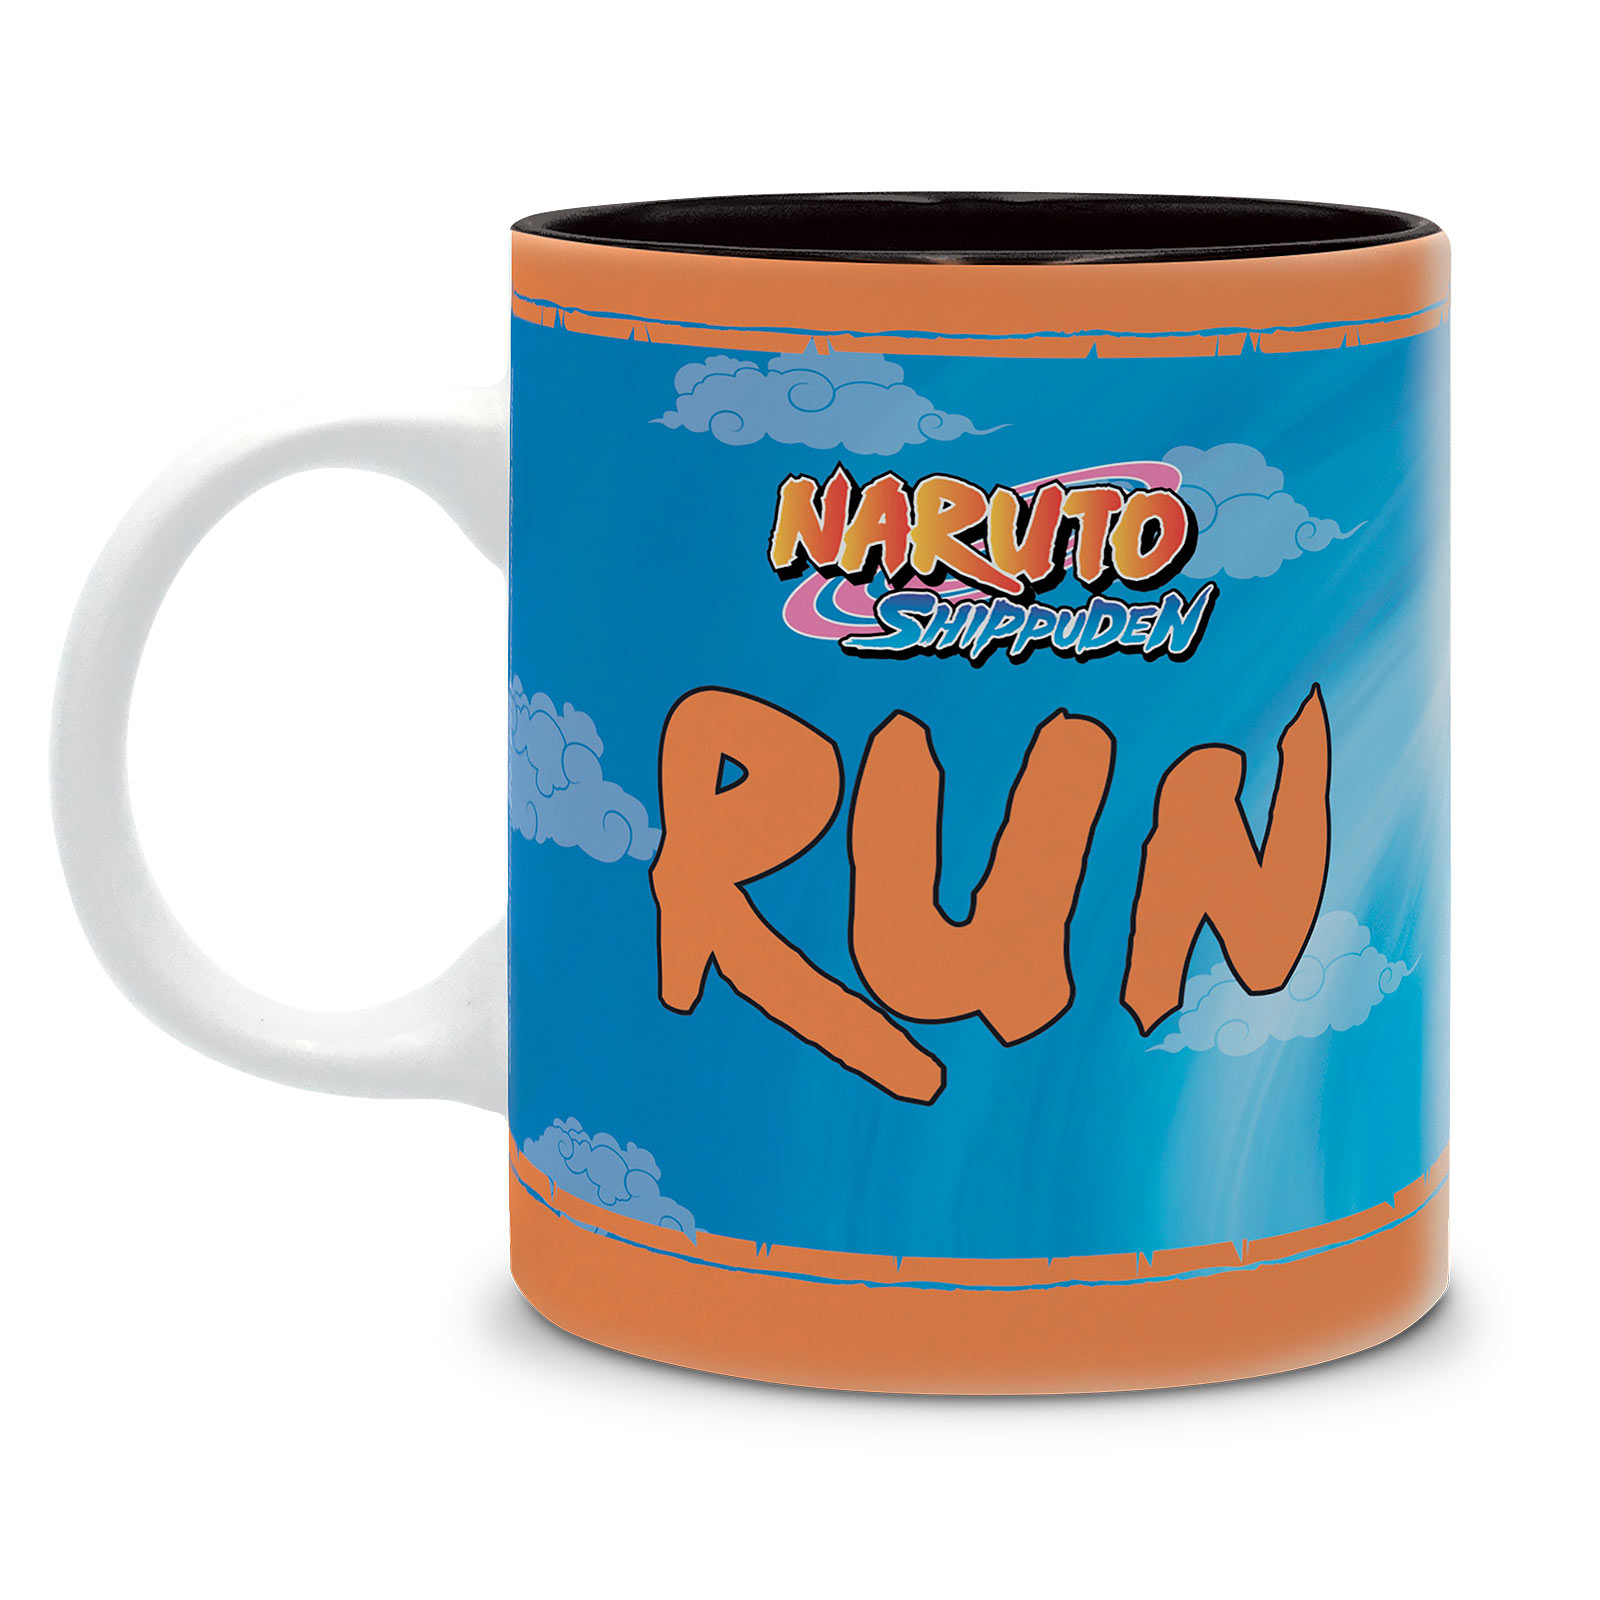 Naruto Shippuden - Naruto Run Mug